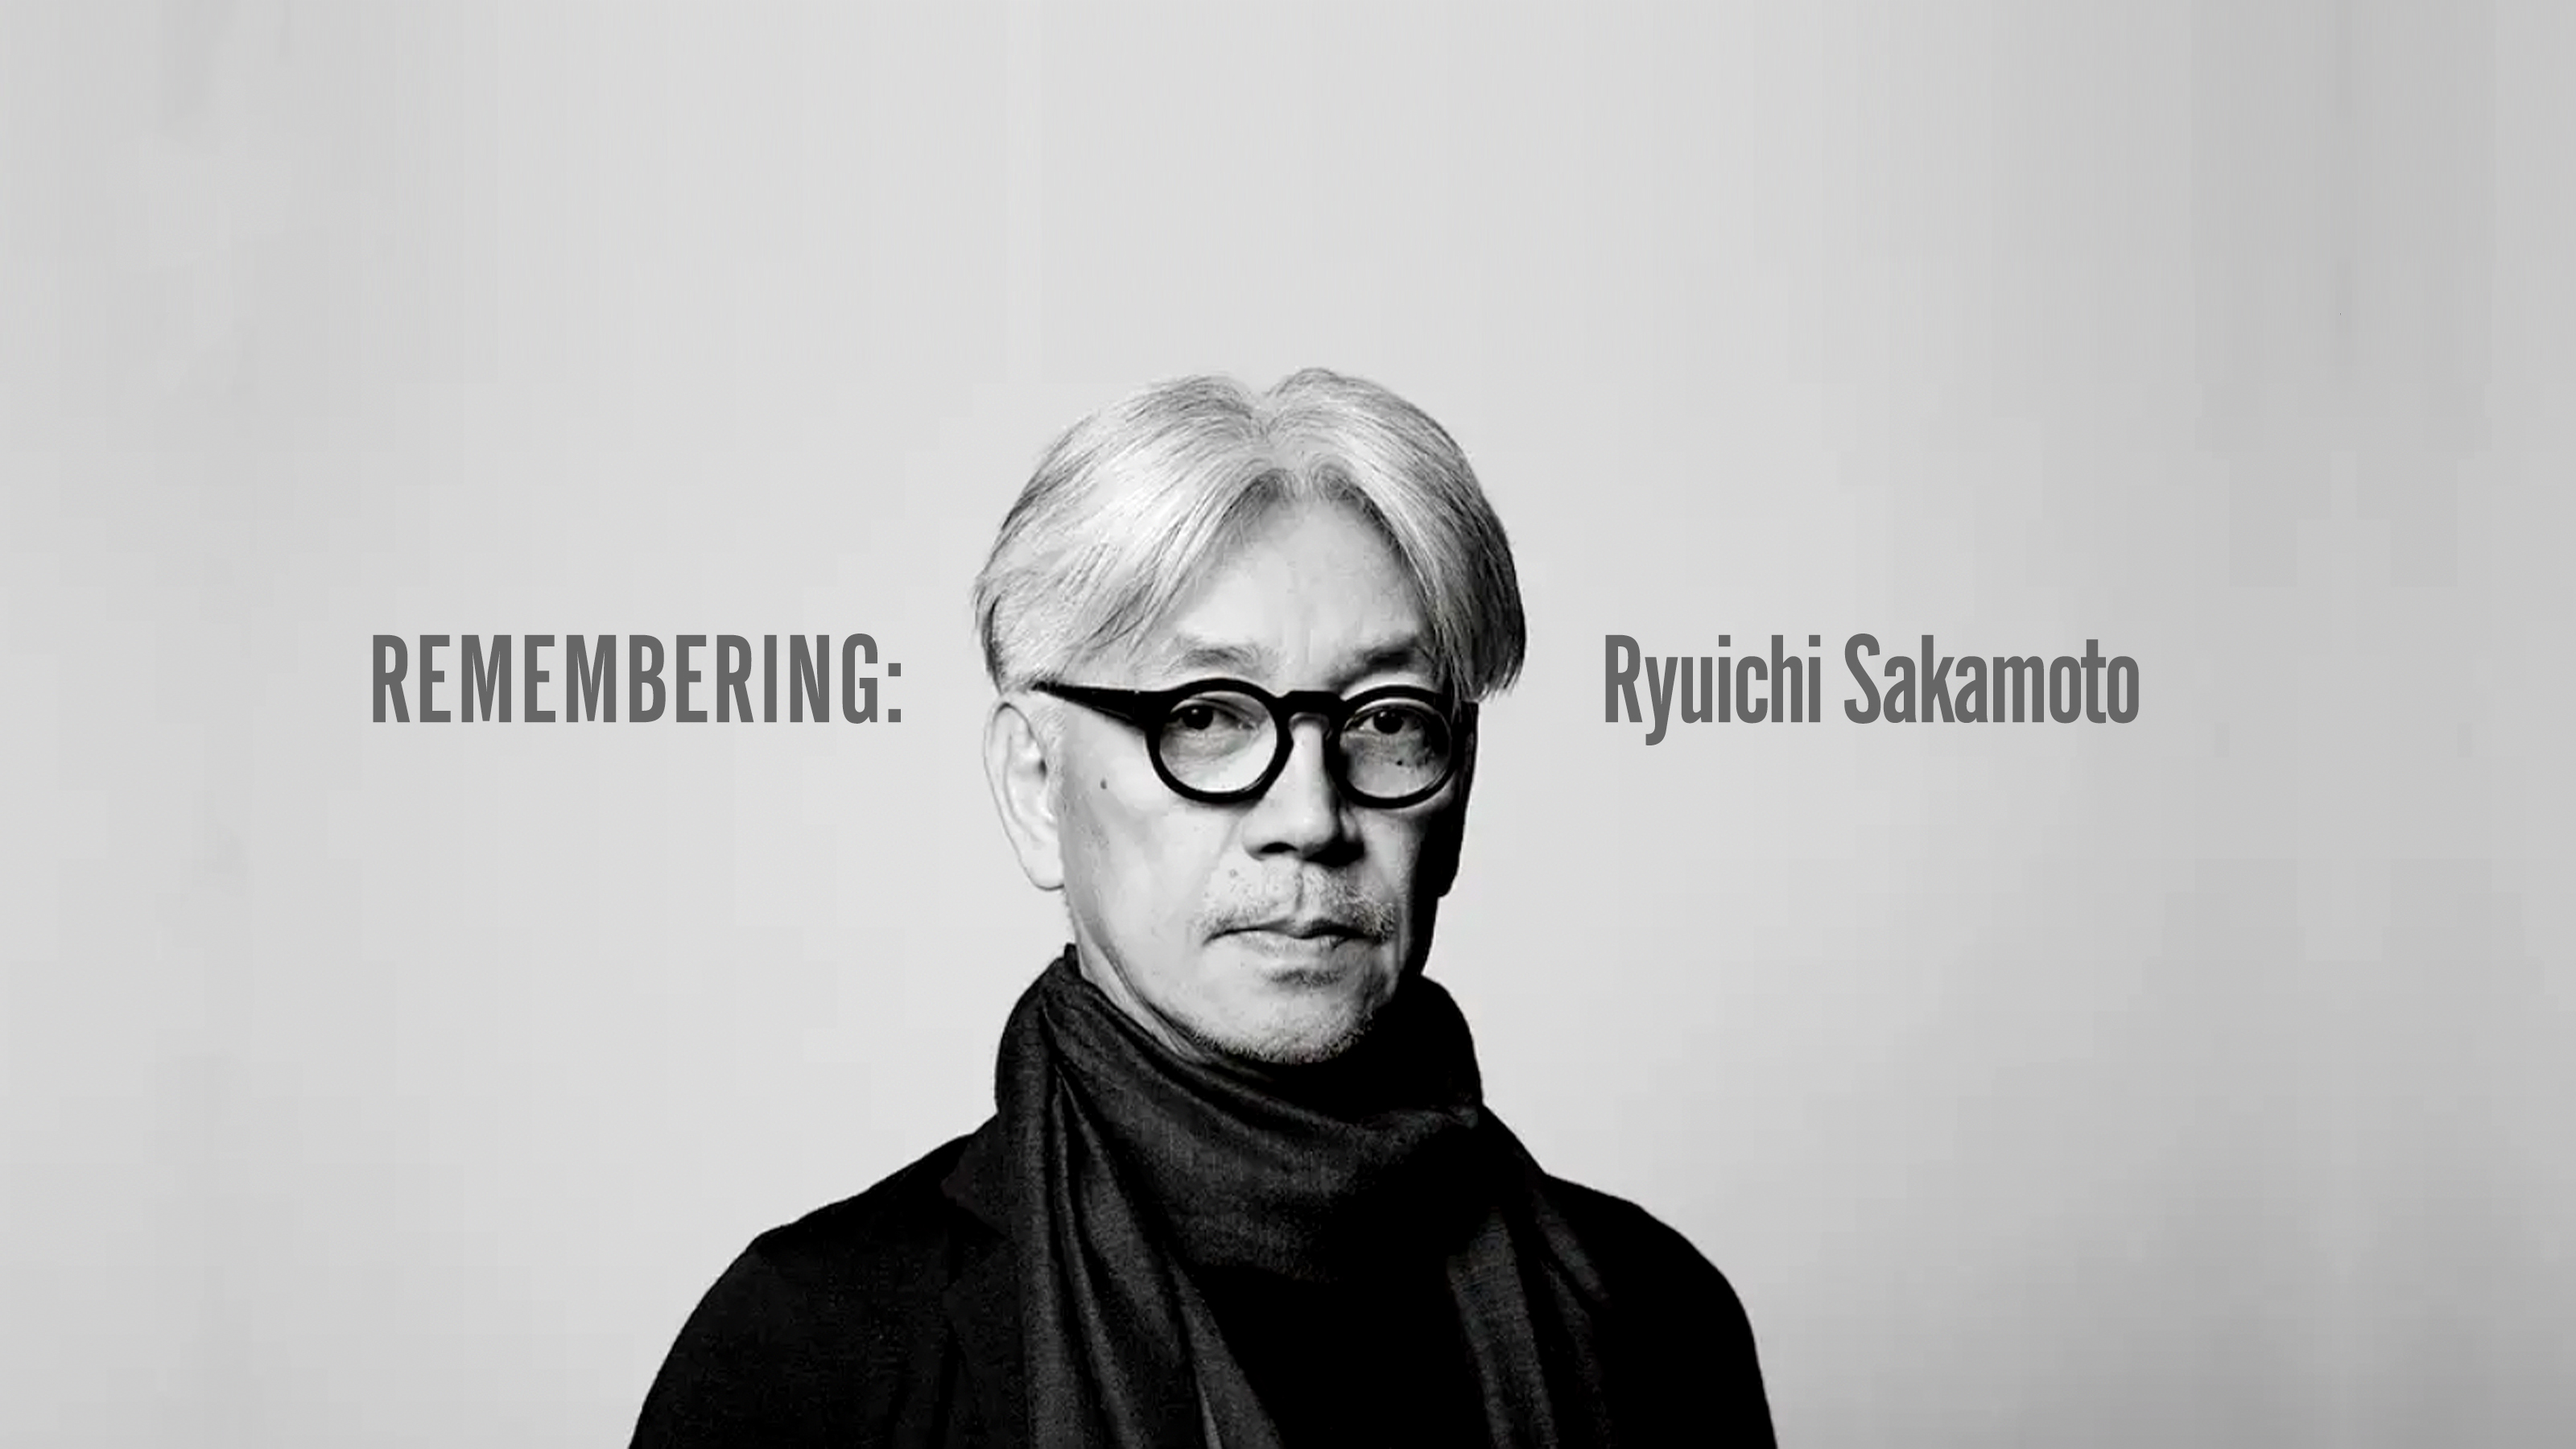 REMEMBERING: t v = Ryuichi Sakamoto